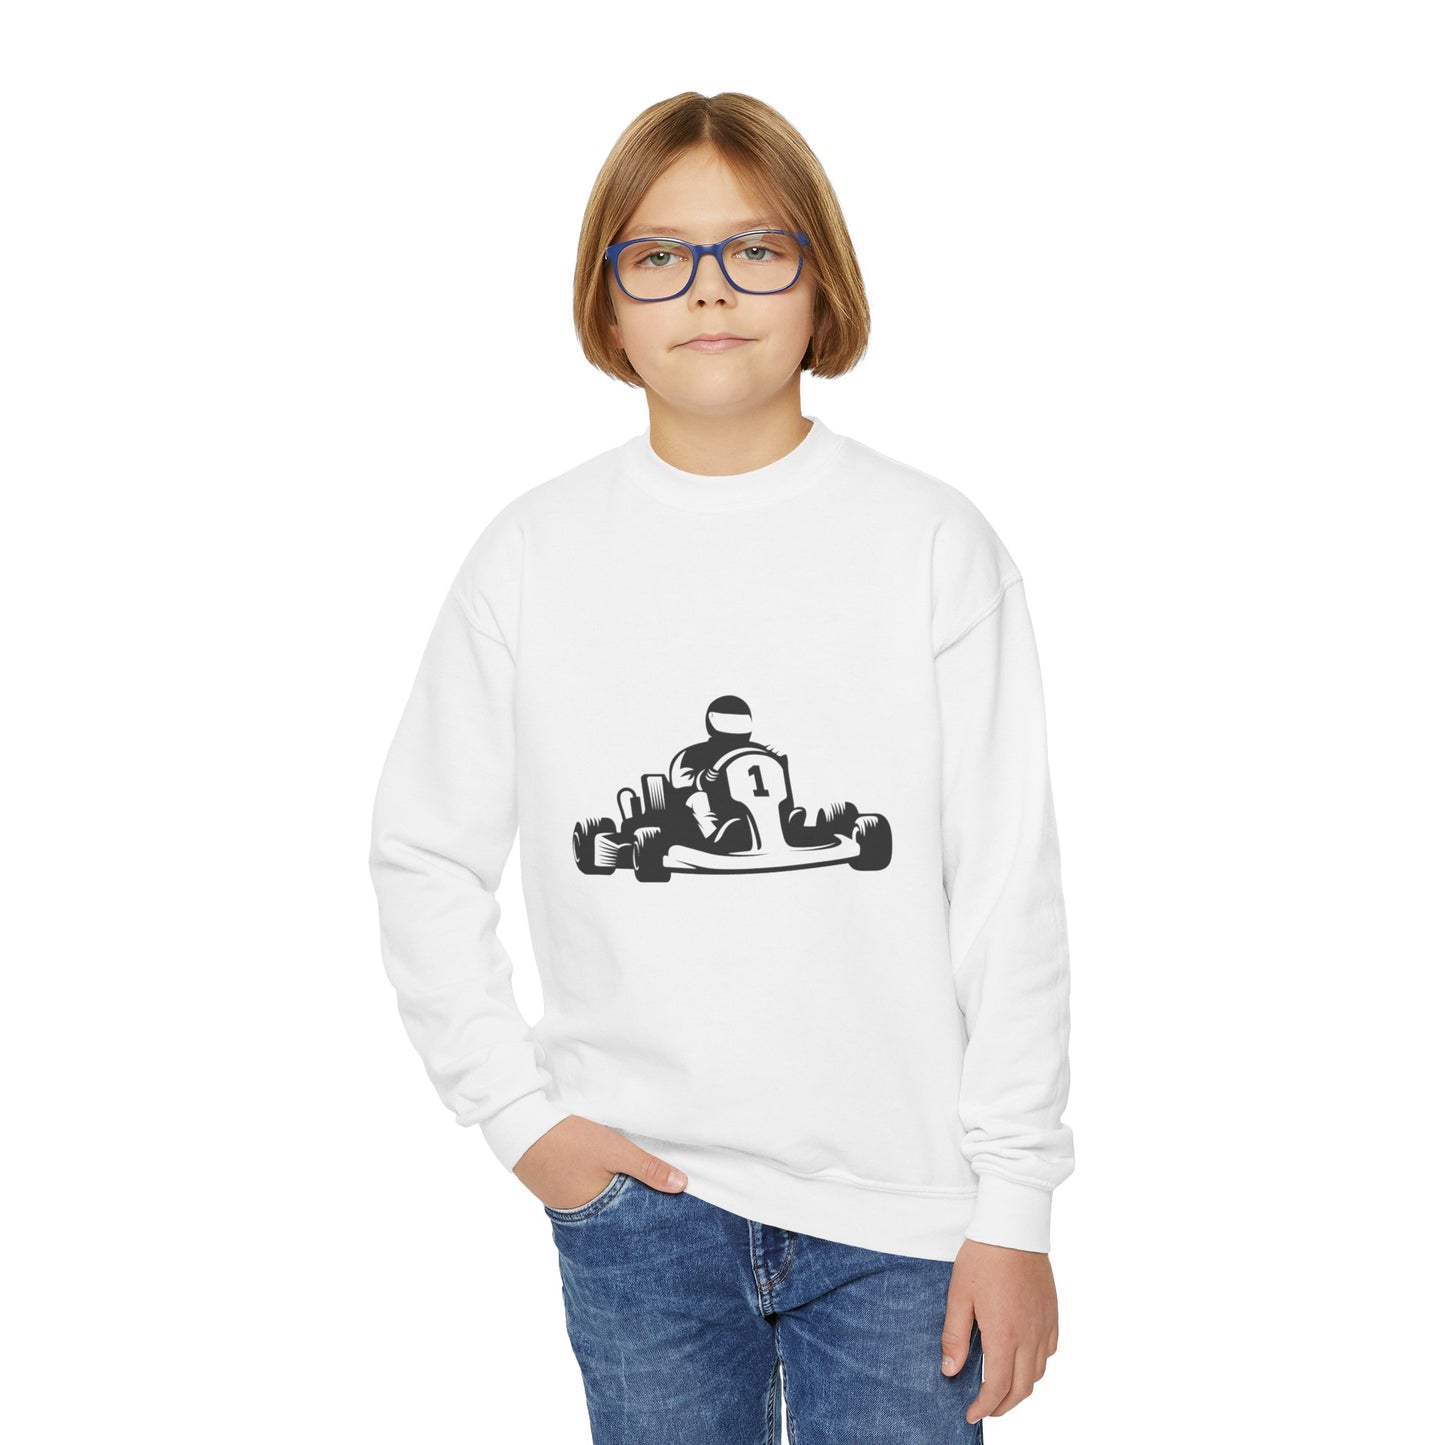 Youth Crewneck Sweatshirt: Racing